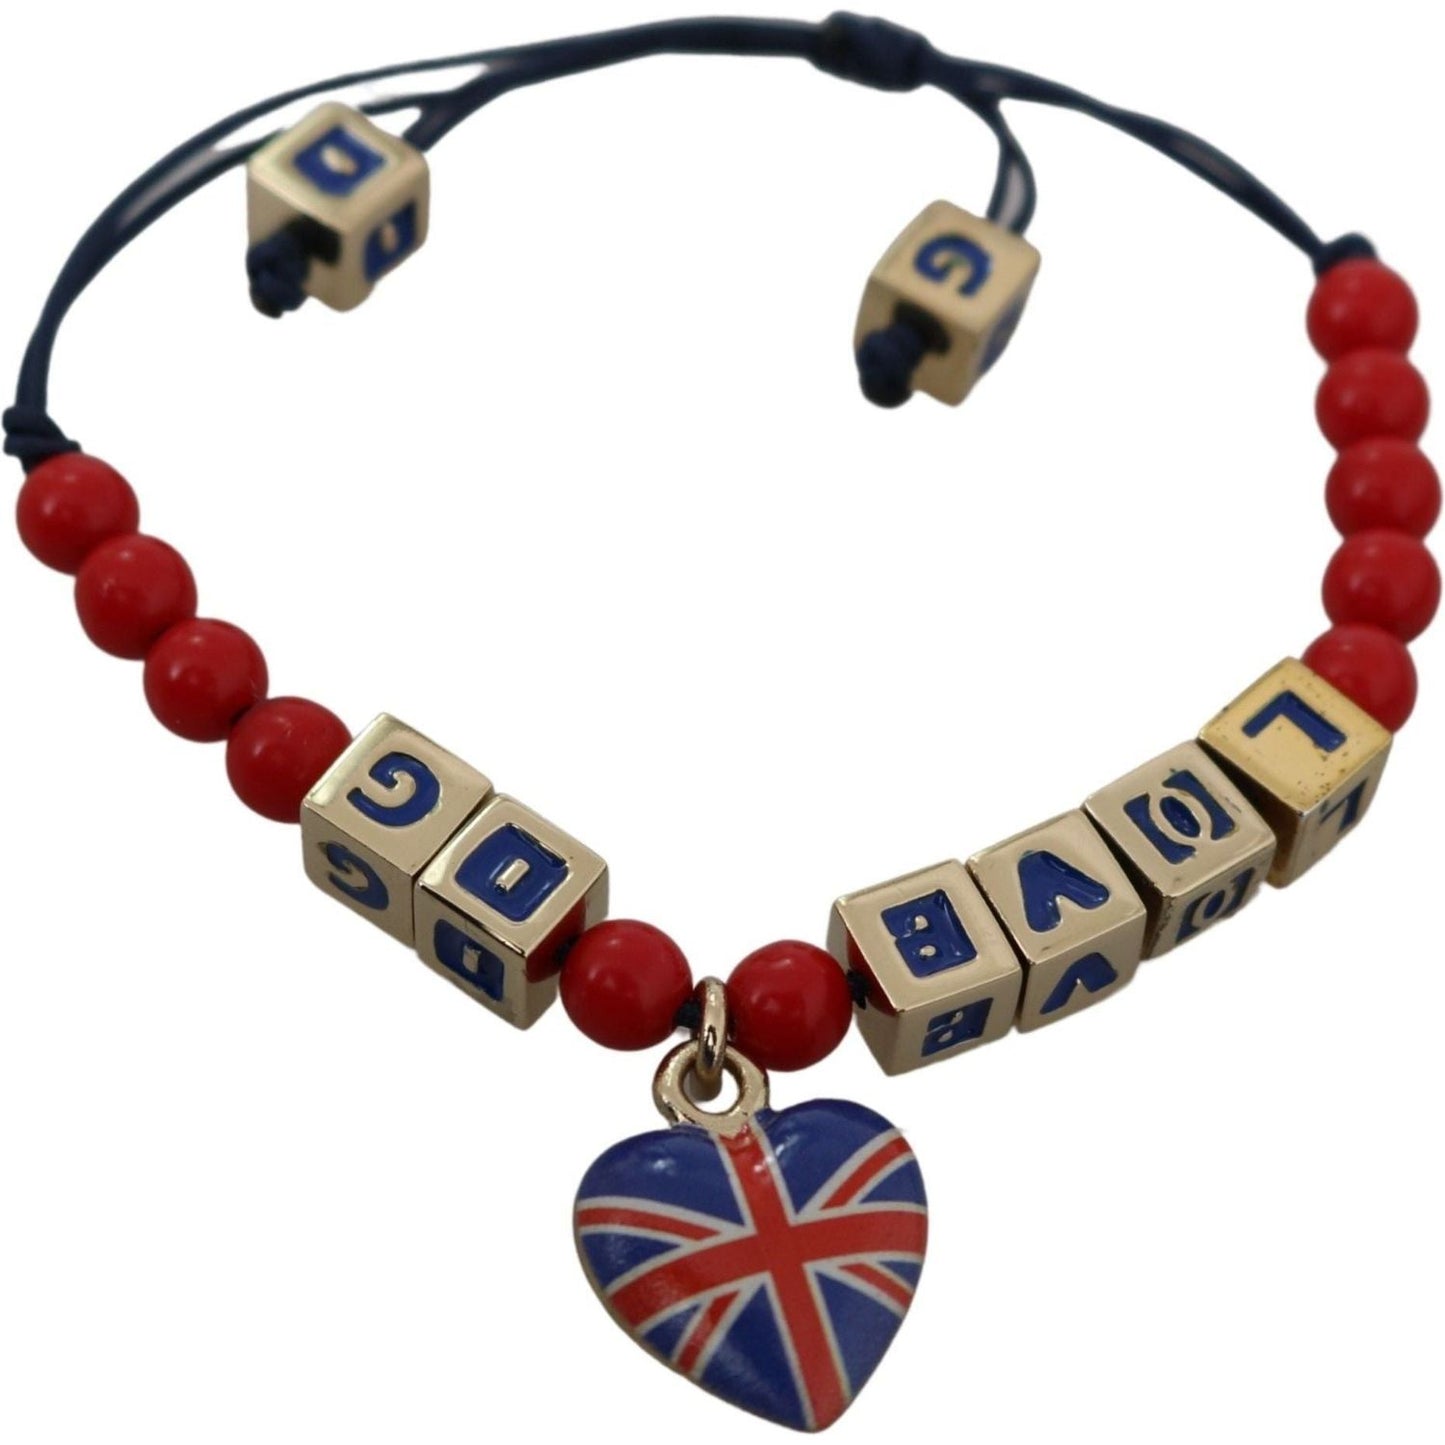 Dolce & Gabbana Elegant Blue Red Glass Cotton Blend Bracelet Bracelet red-blue-beaded-dg-loves-london-flag-branded-bracelet IMG_3740-7f94dc50-f06.jpg